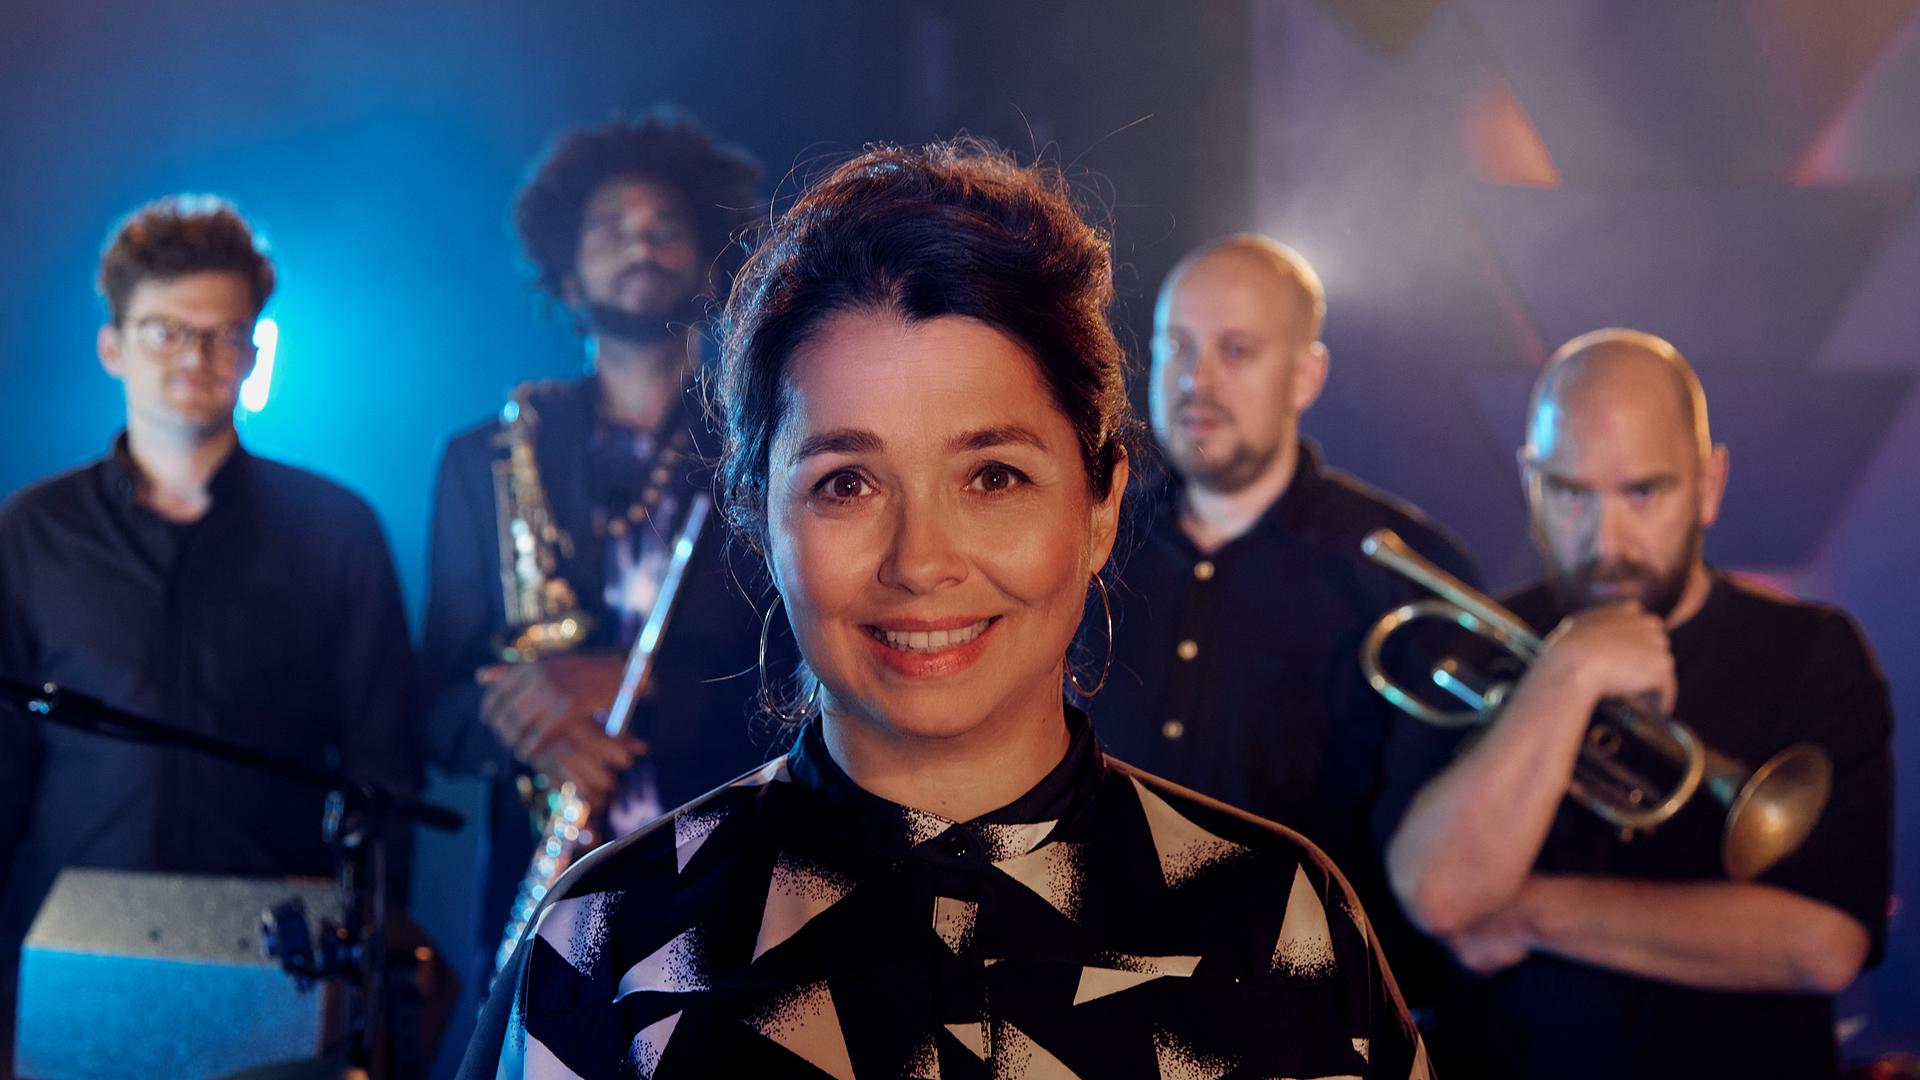 Sängerin Céline Rudoph steht auf einer beleuchteten Bühne mit ihren vier männlichen Bandmitgliedern, die teilweise ihre Blechblasinstrumente dabei haben und alle gemeinsam in die Kamera schauen.